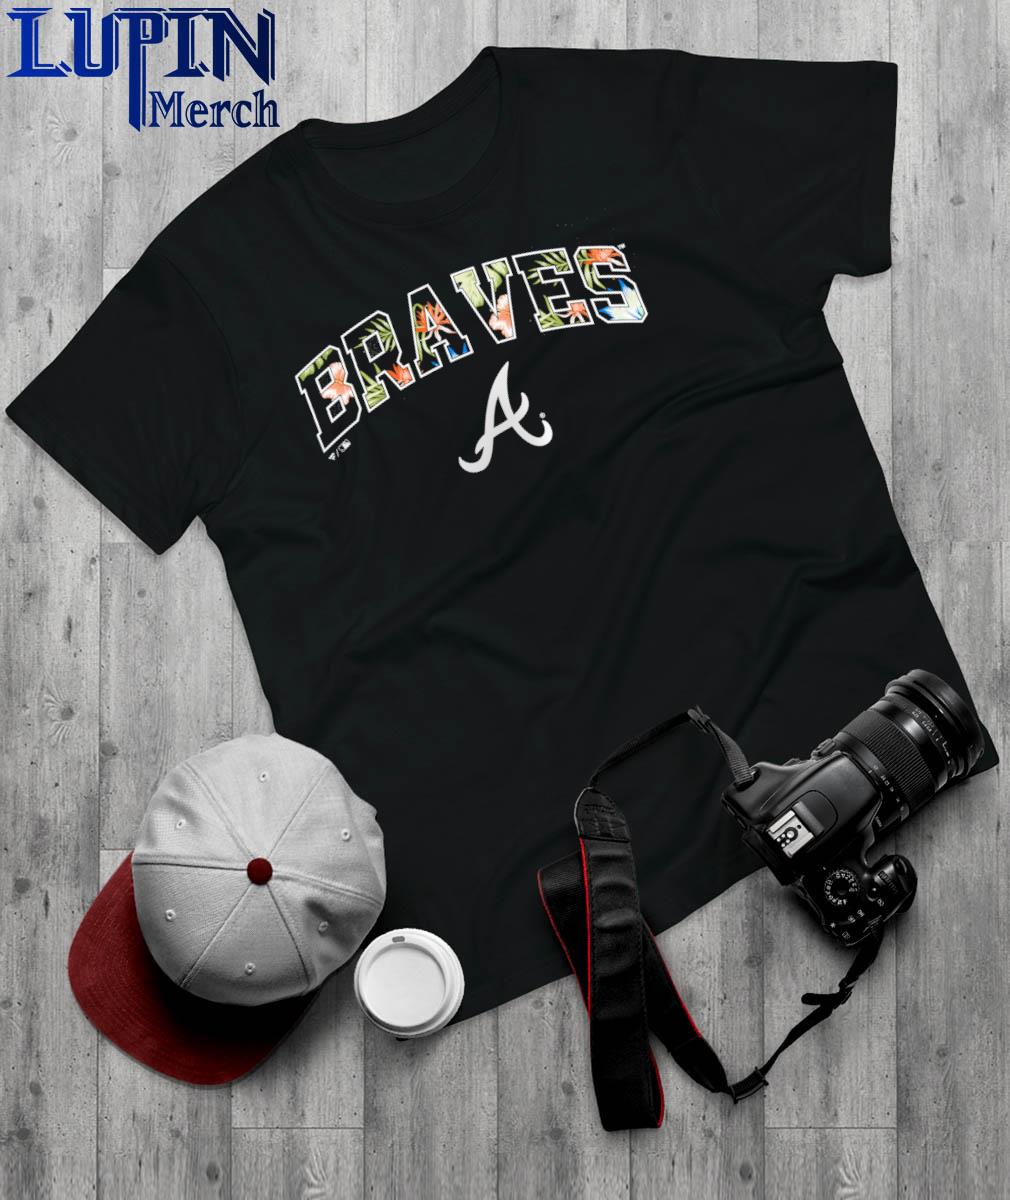 Los Bravos Atlanta Braves T-shirt, hoodie, sweater, longsleeve and